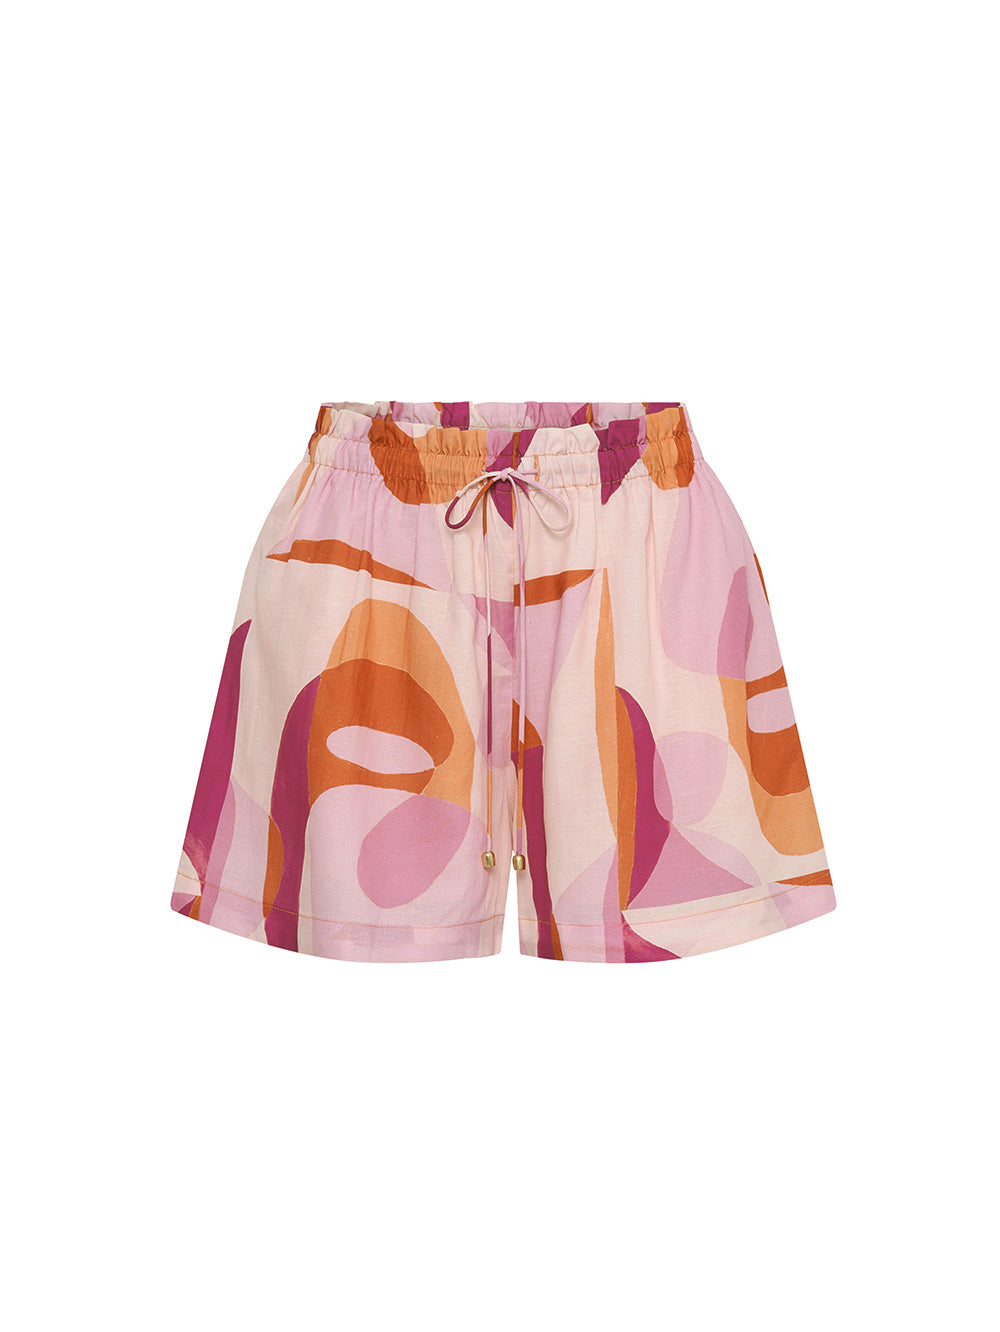  KIVARI Franz Short | Pink, Purple and Orange Shorts